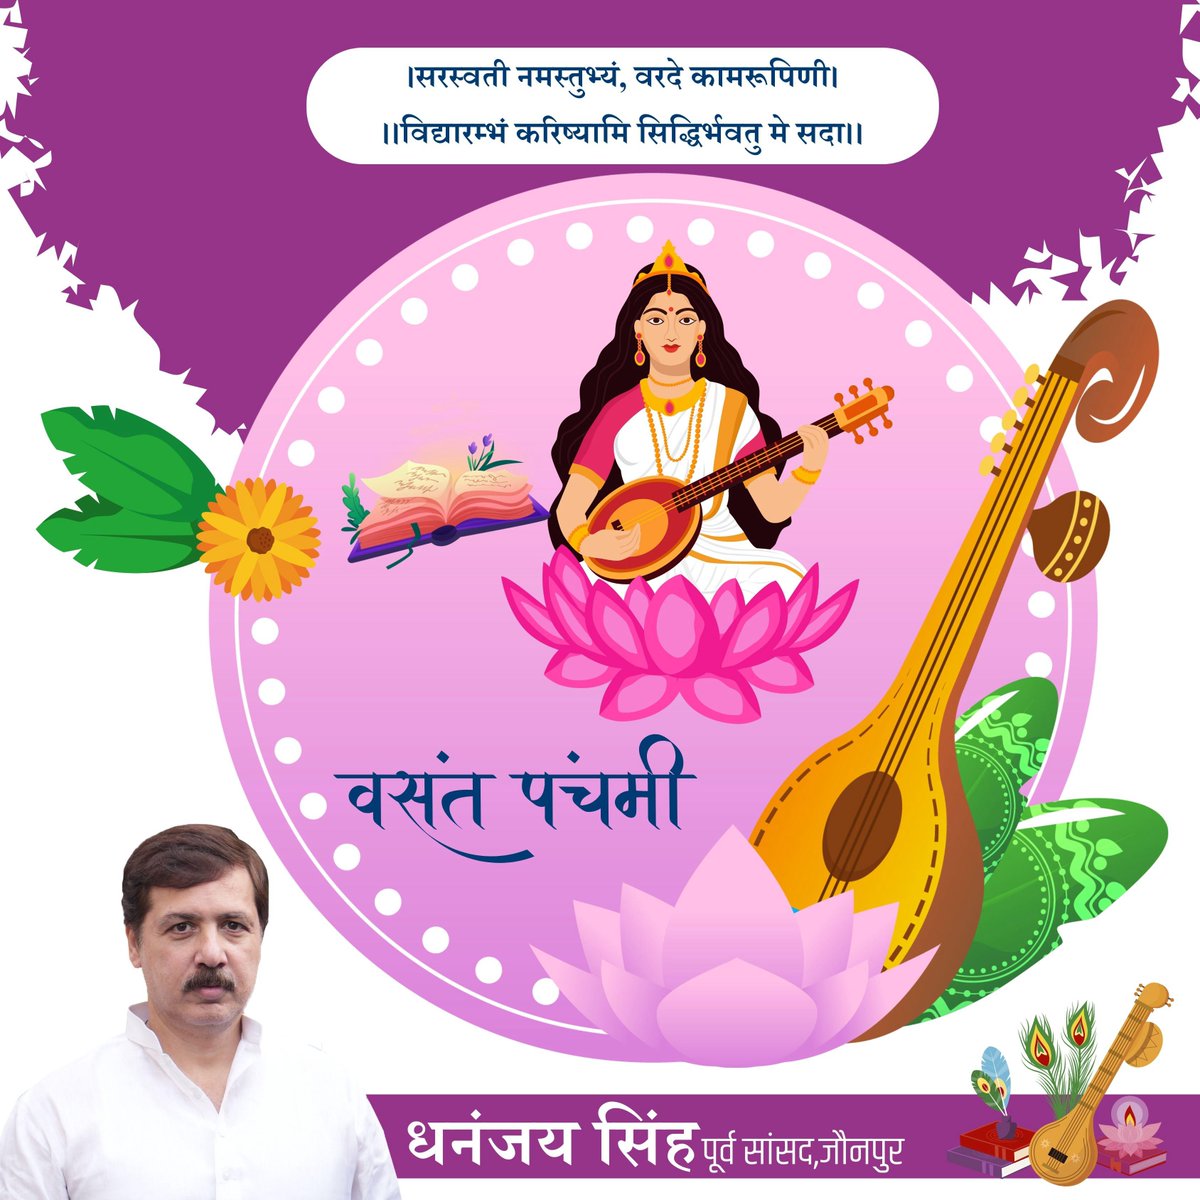 ऋतुराज बसंत के आगमन एवं विद्या की देवी माँ सरस्वती के पूजन दिवस 'बसंत पंचमी' की हार्दिक शुभकामना। #बसंत_पंचमी